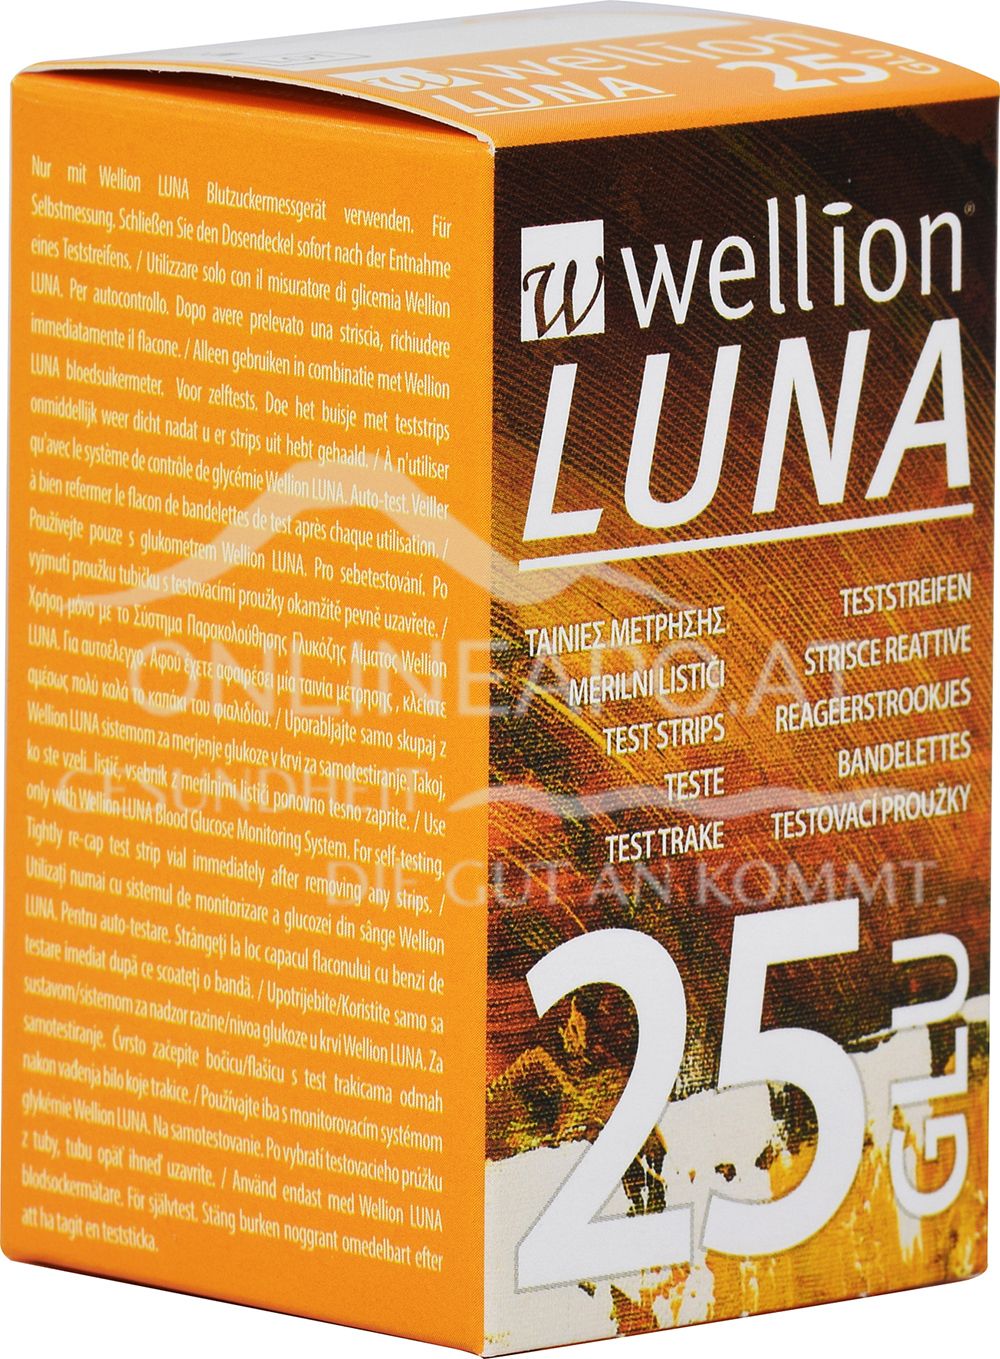 Wellion® LUNA Blutzuckerteststreifen GLU